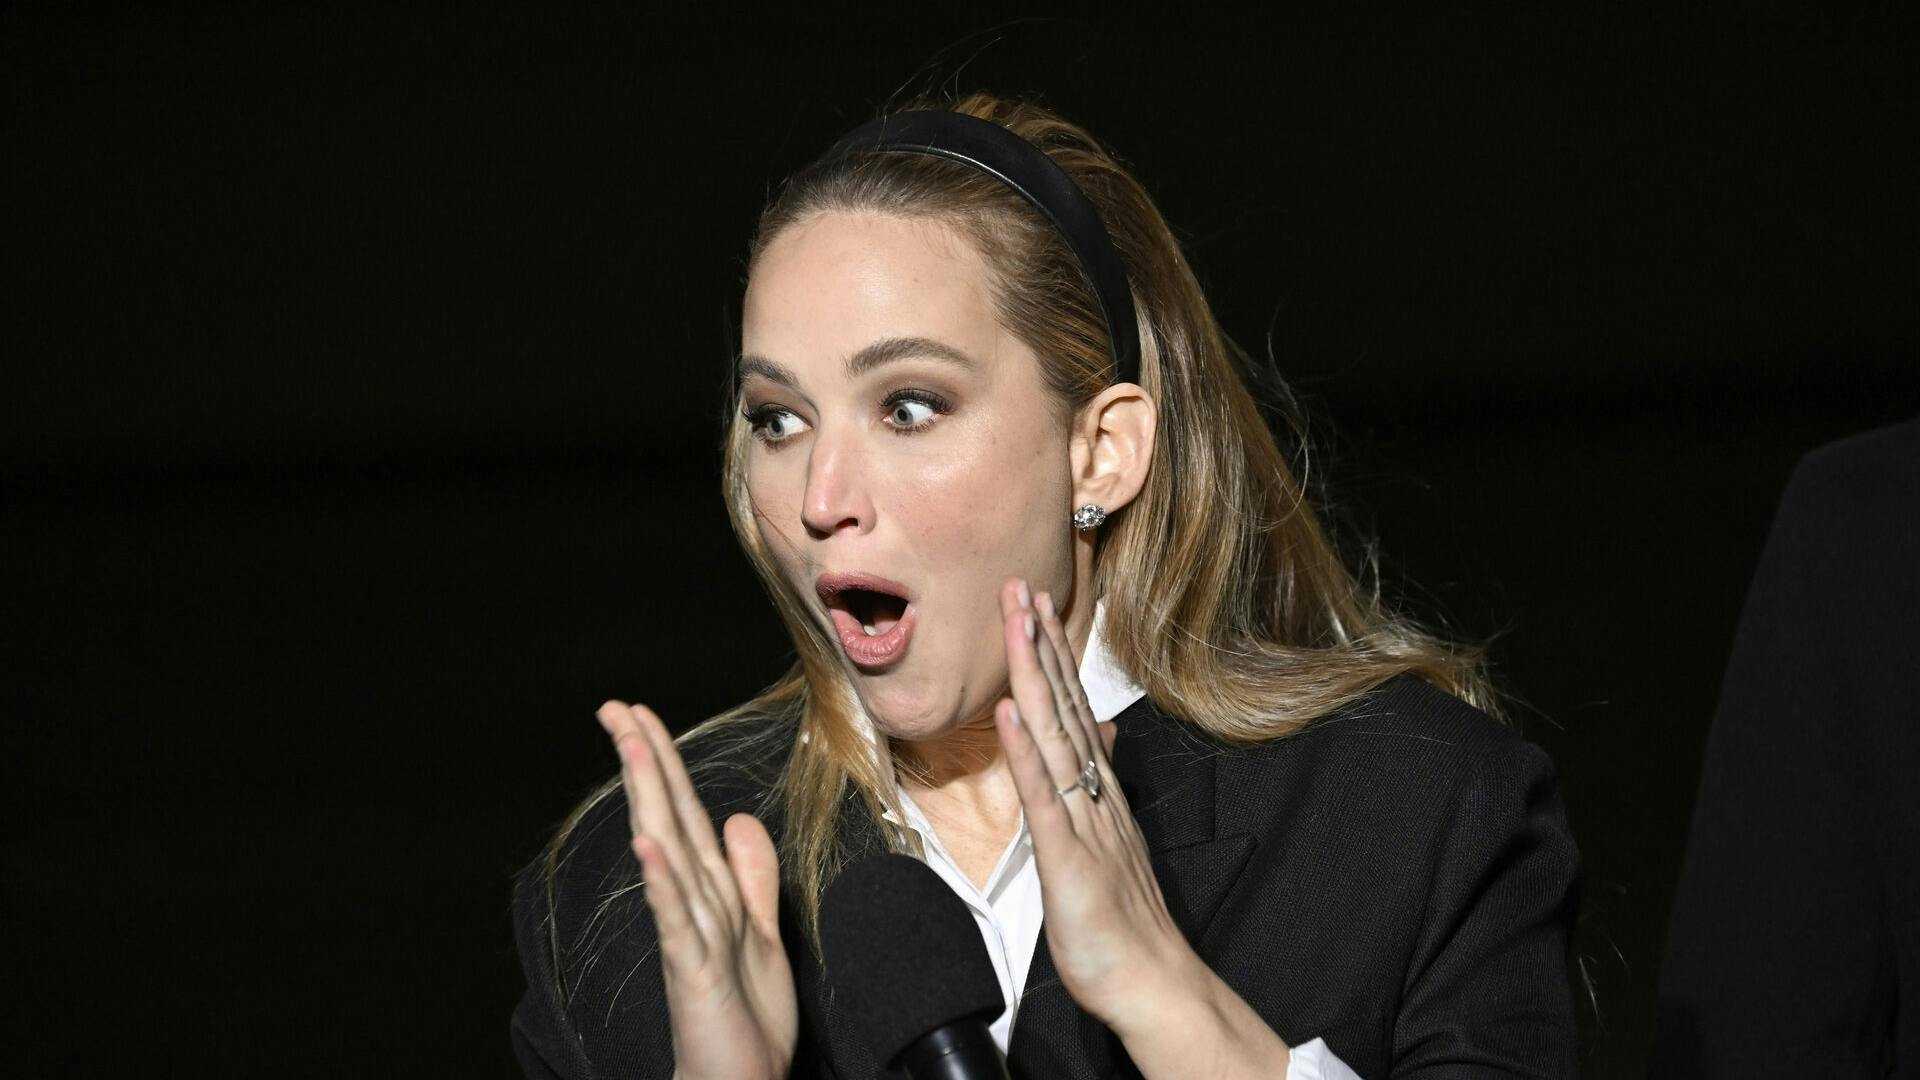 Jennifer Lawrence havde ikke helt med sit outfit, da hun i gæstede et Dior-event i New York mandag.